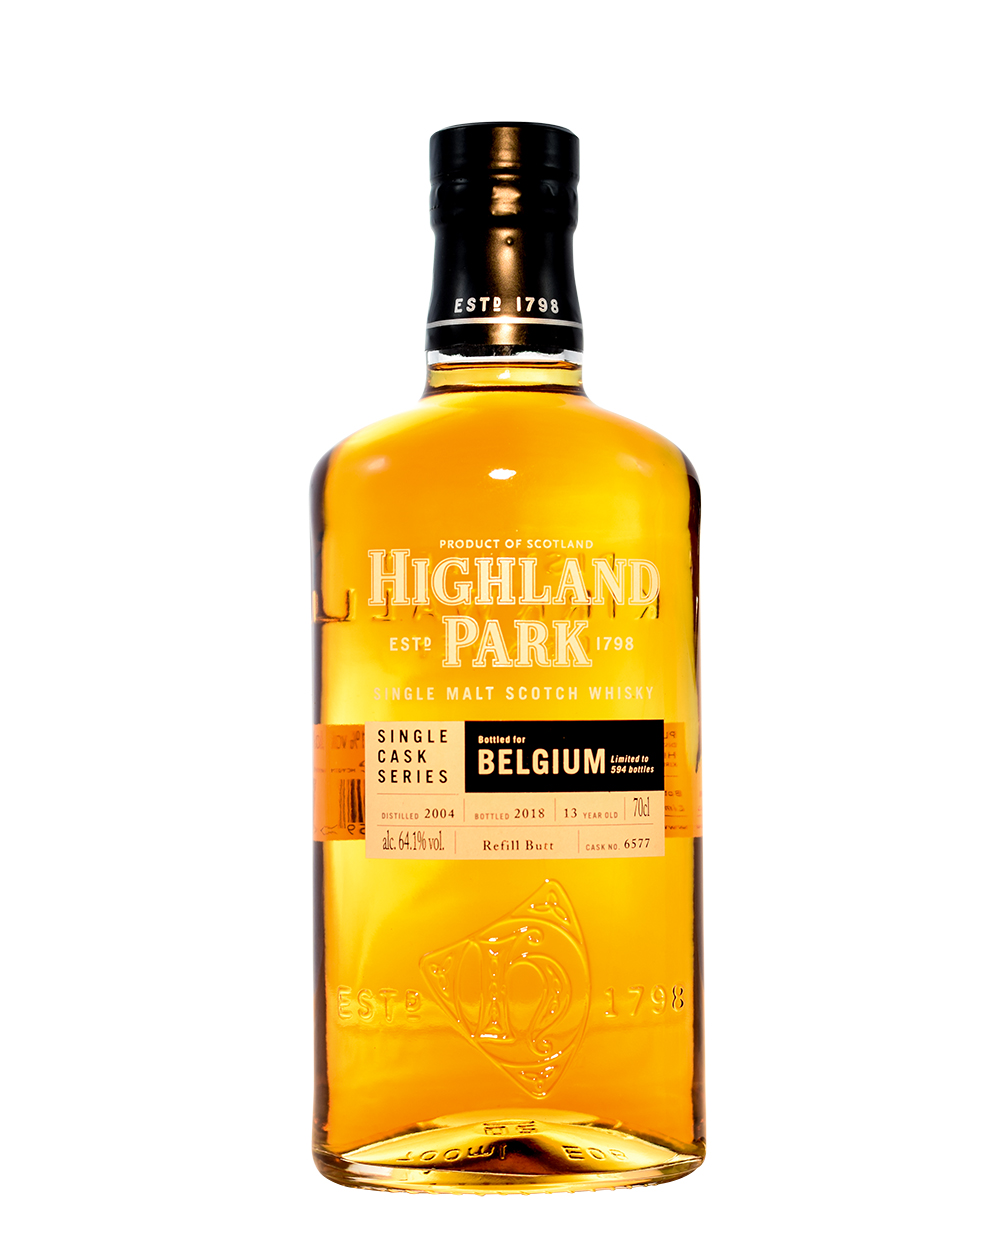 Highland Park Single Cask - Bottled for Belgium Musthave Malts MHM